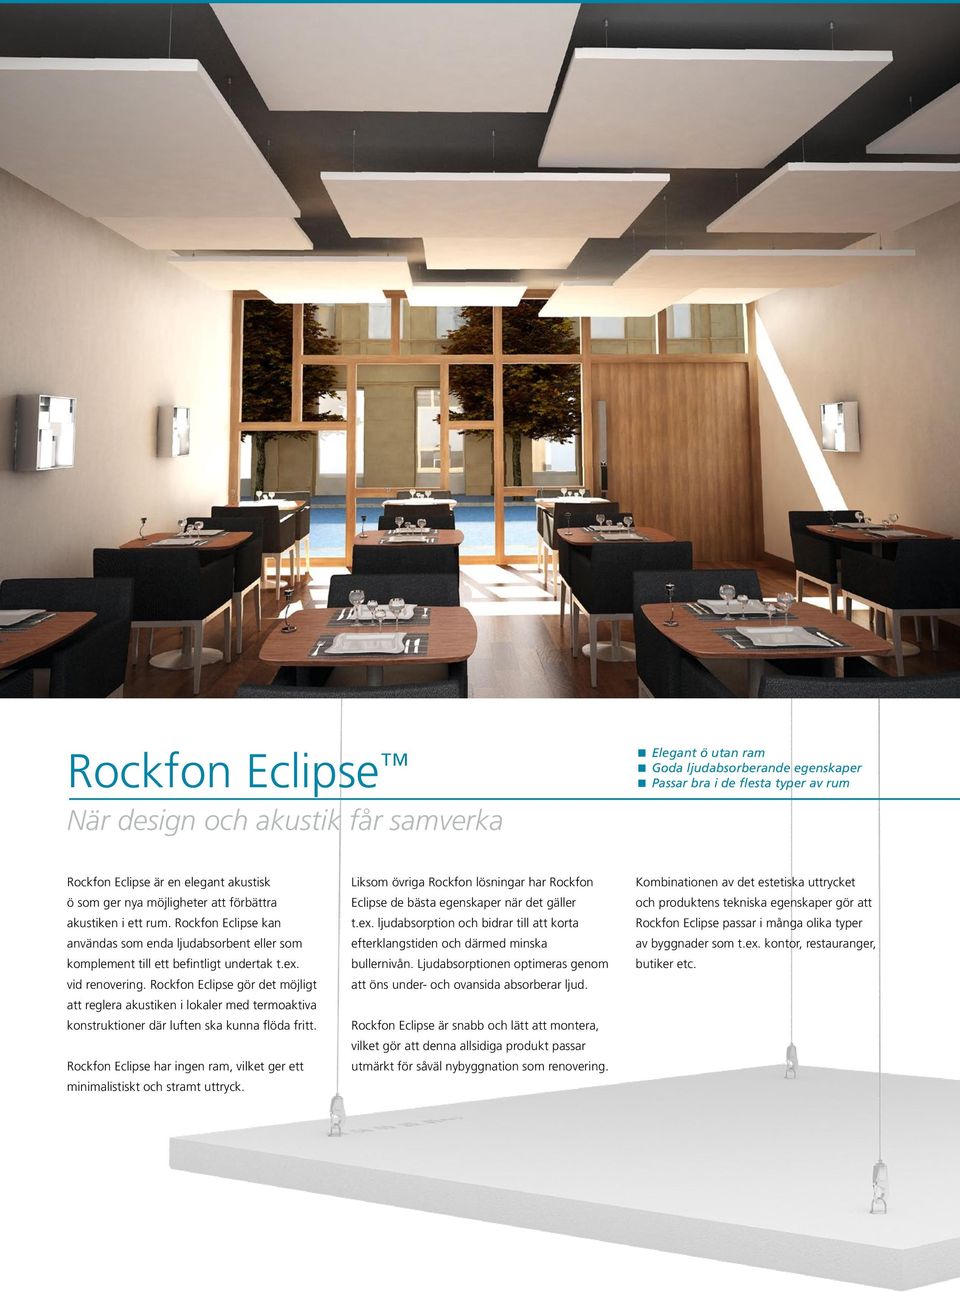 Rockfon Eclipse gör det möjligt att reglera akustiken i lokaler med termoaktiva konstruktioner där luften ska kunna flöda fritt.